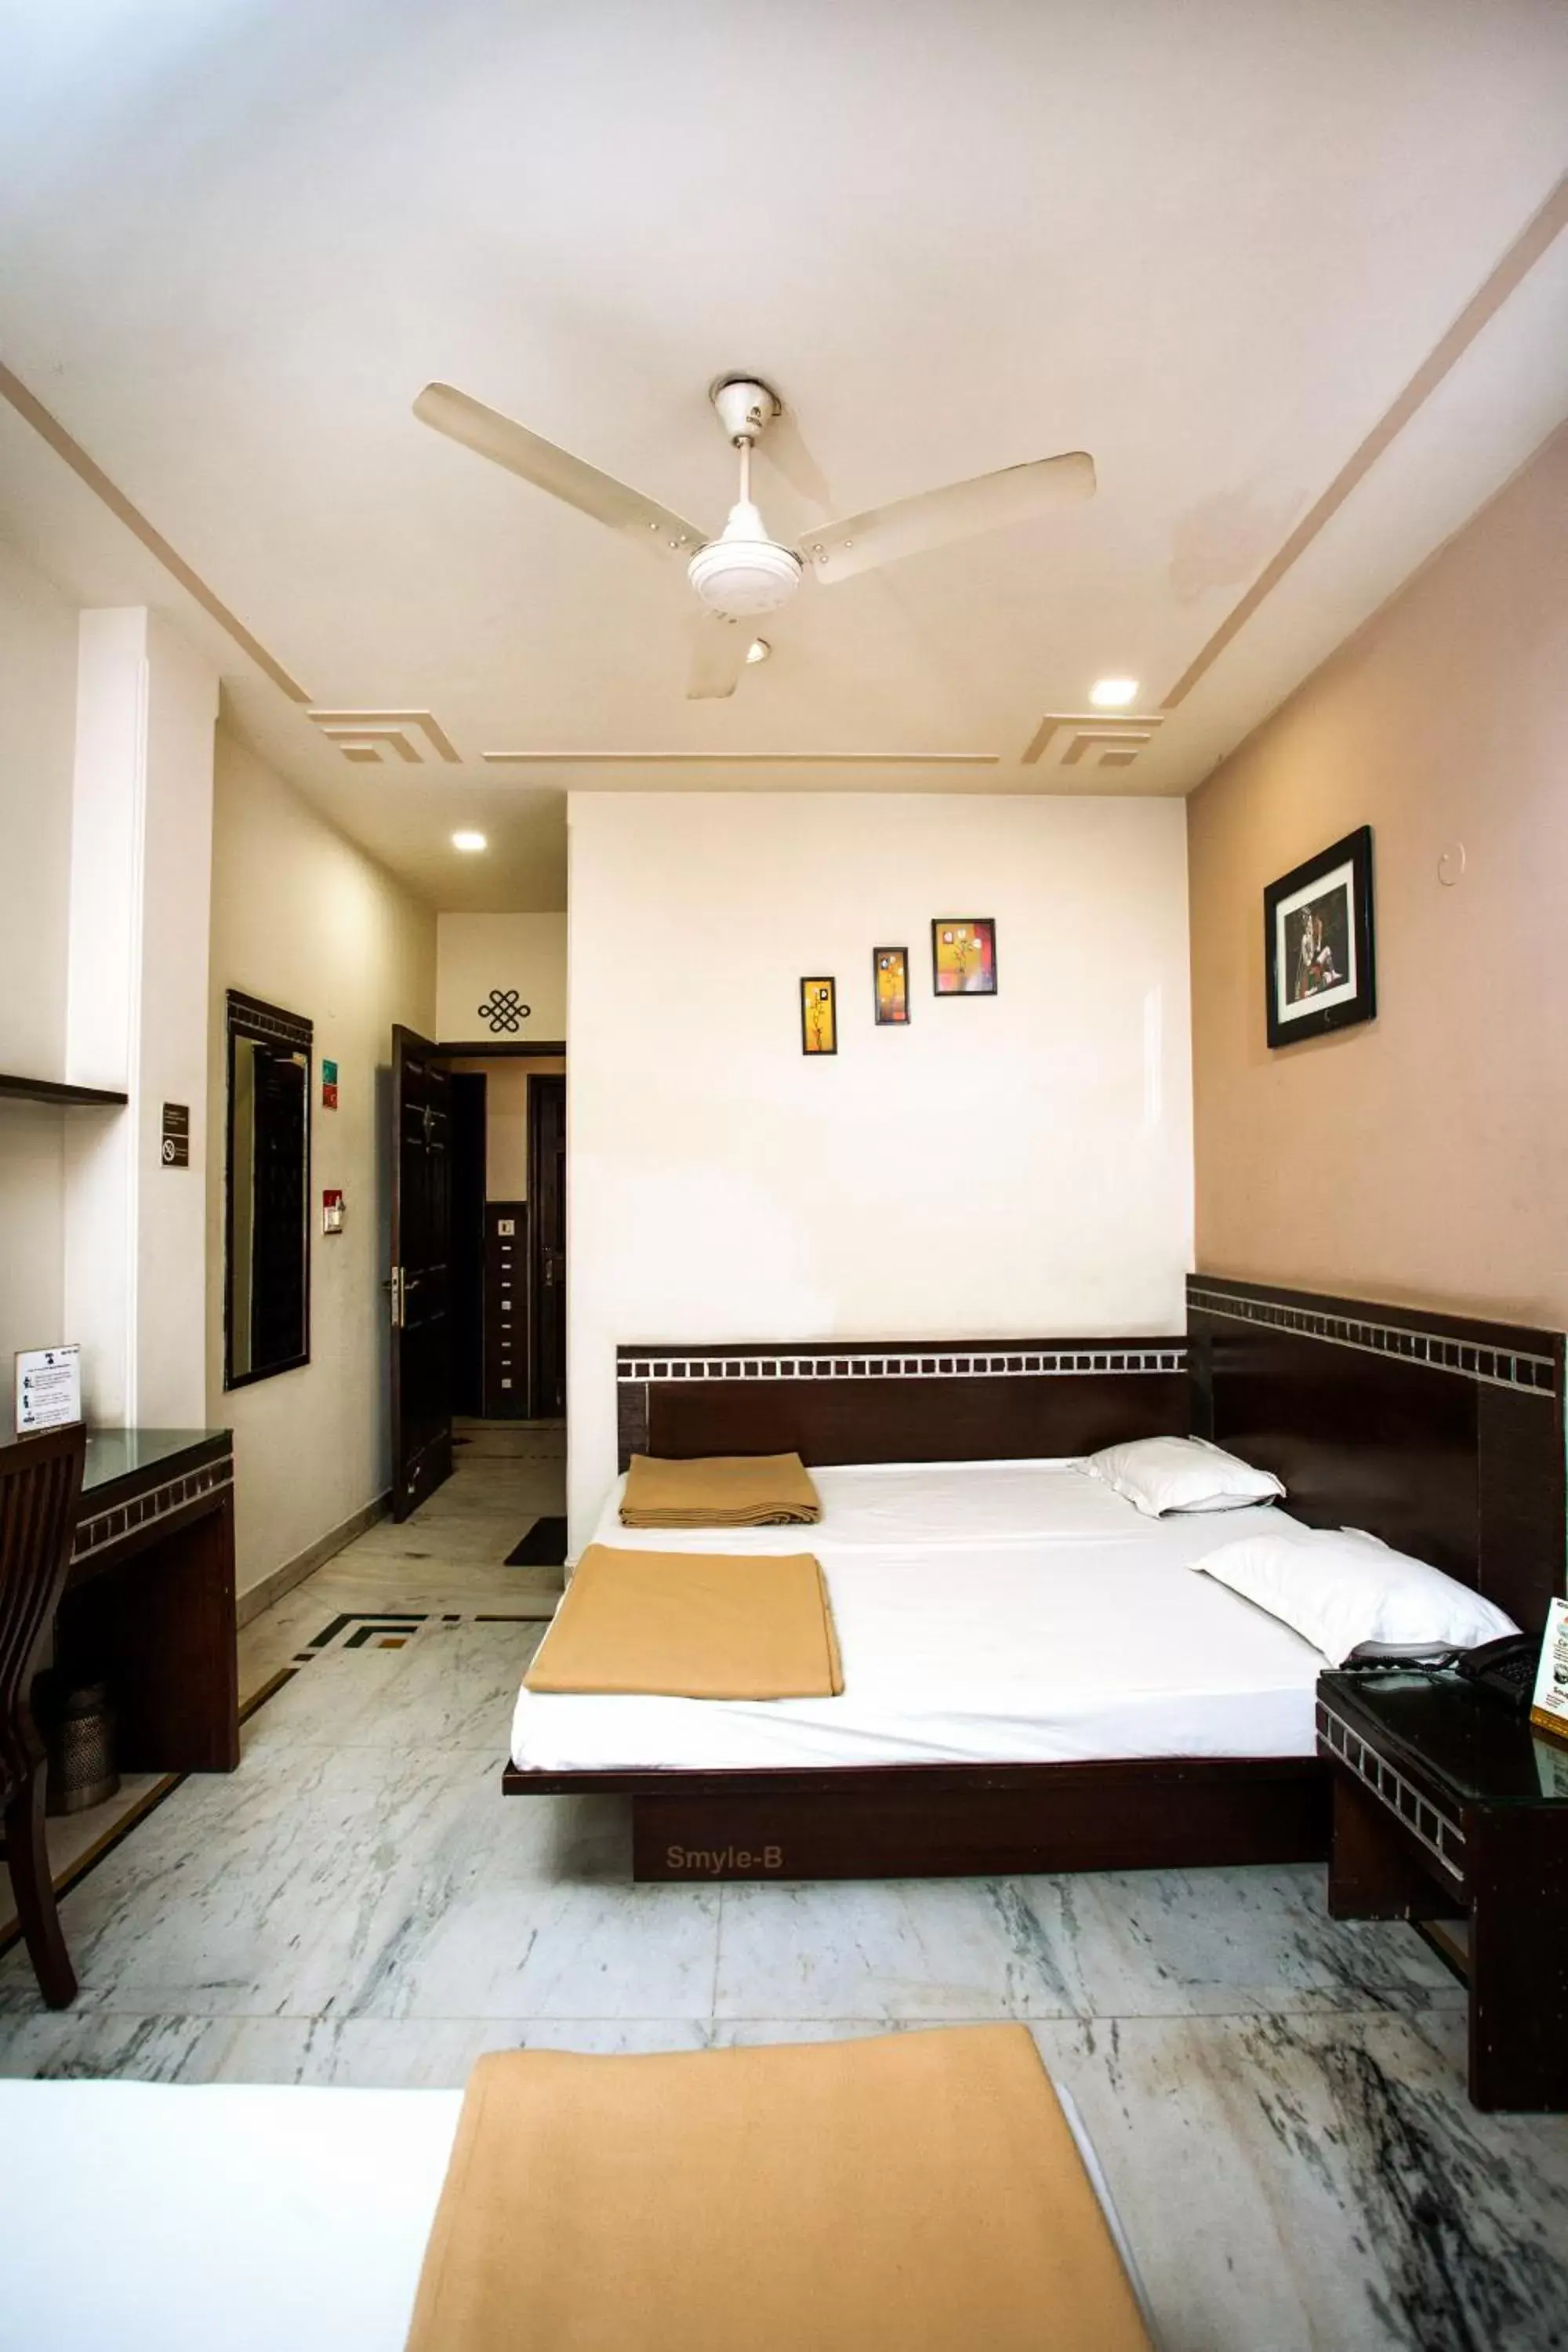 Bed in Smyle Inn - Best Value Hotel near New Delhi Station